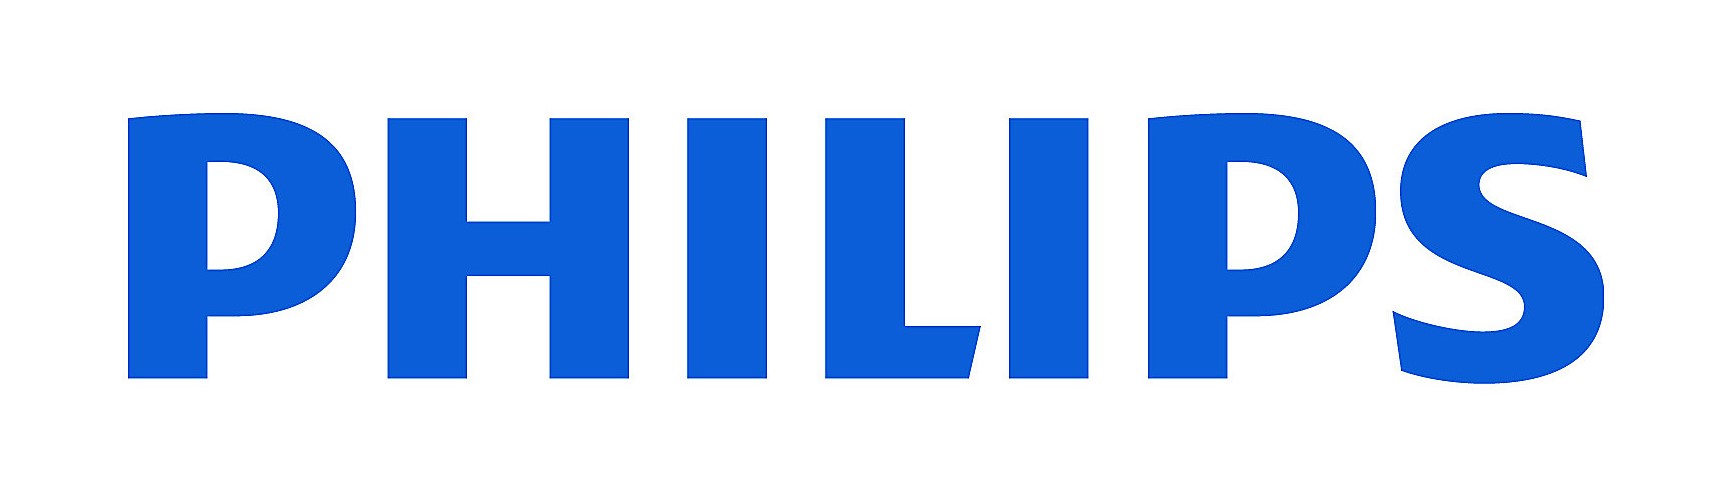 Philips_Wordmark-ALI-global-1